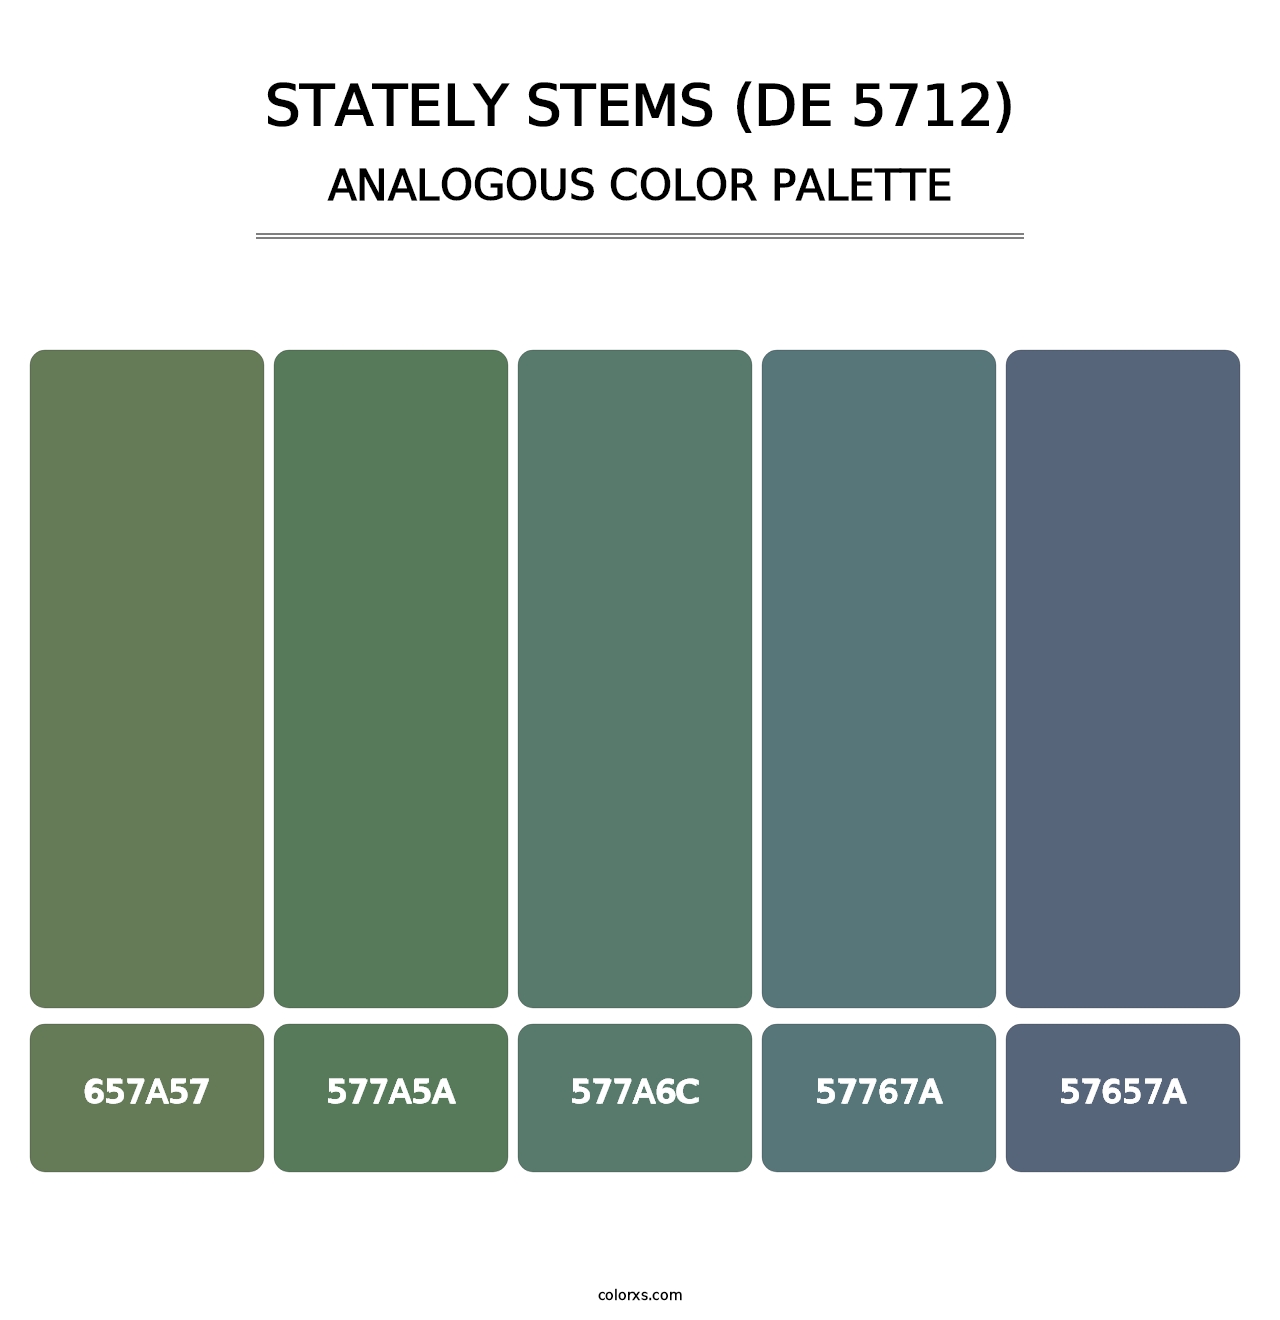 Stately Stems (DE 5712) - Analogous Color Palette